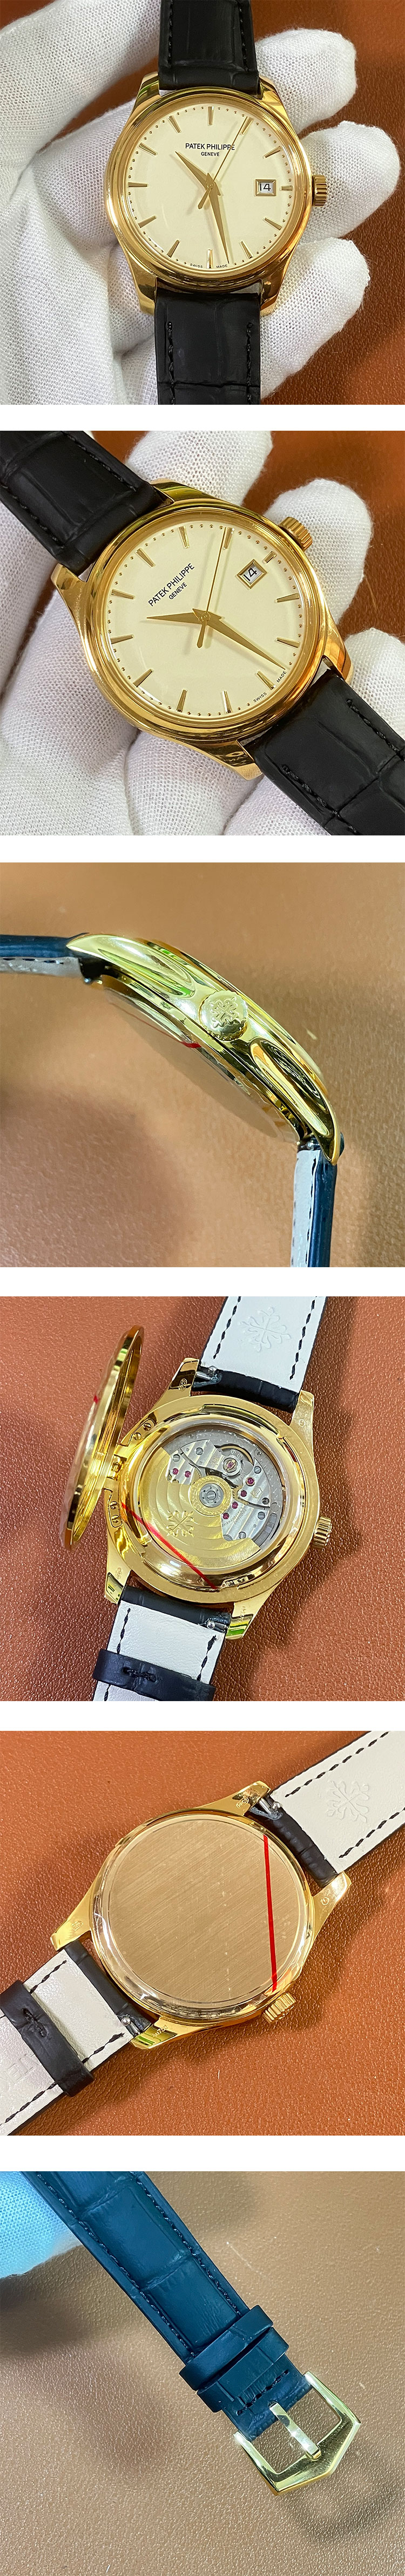 パテック・フィリップコピー時計  カラトラバ 5227J-001 ゴールド